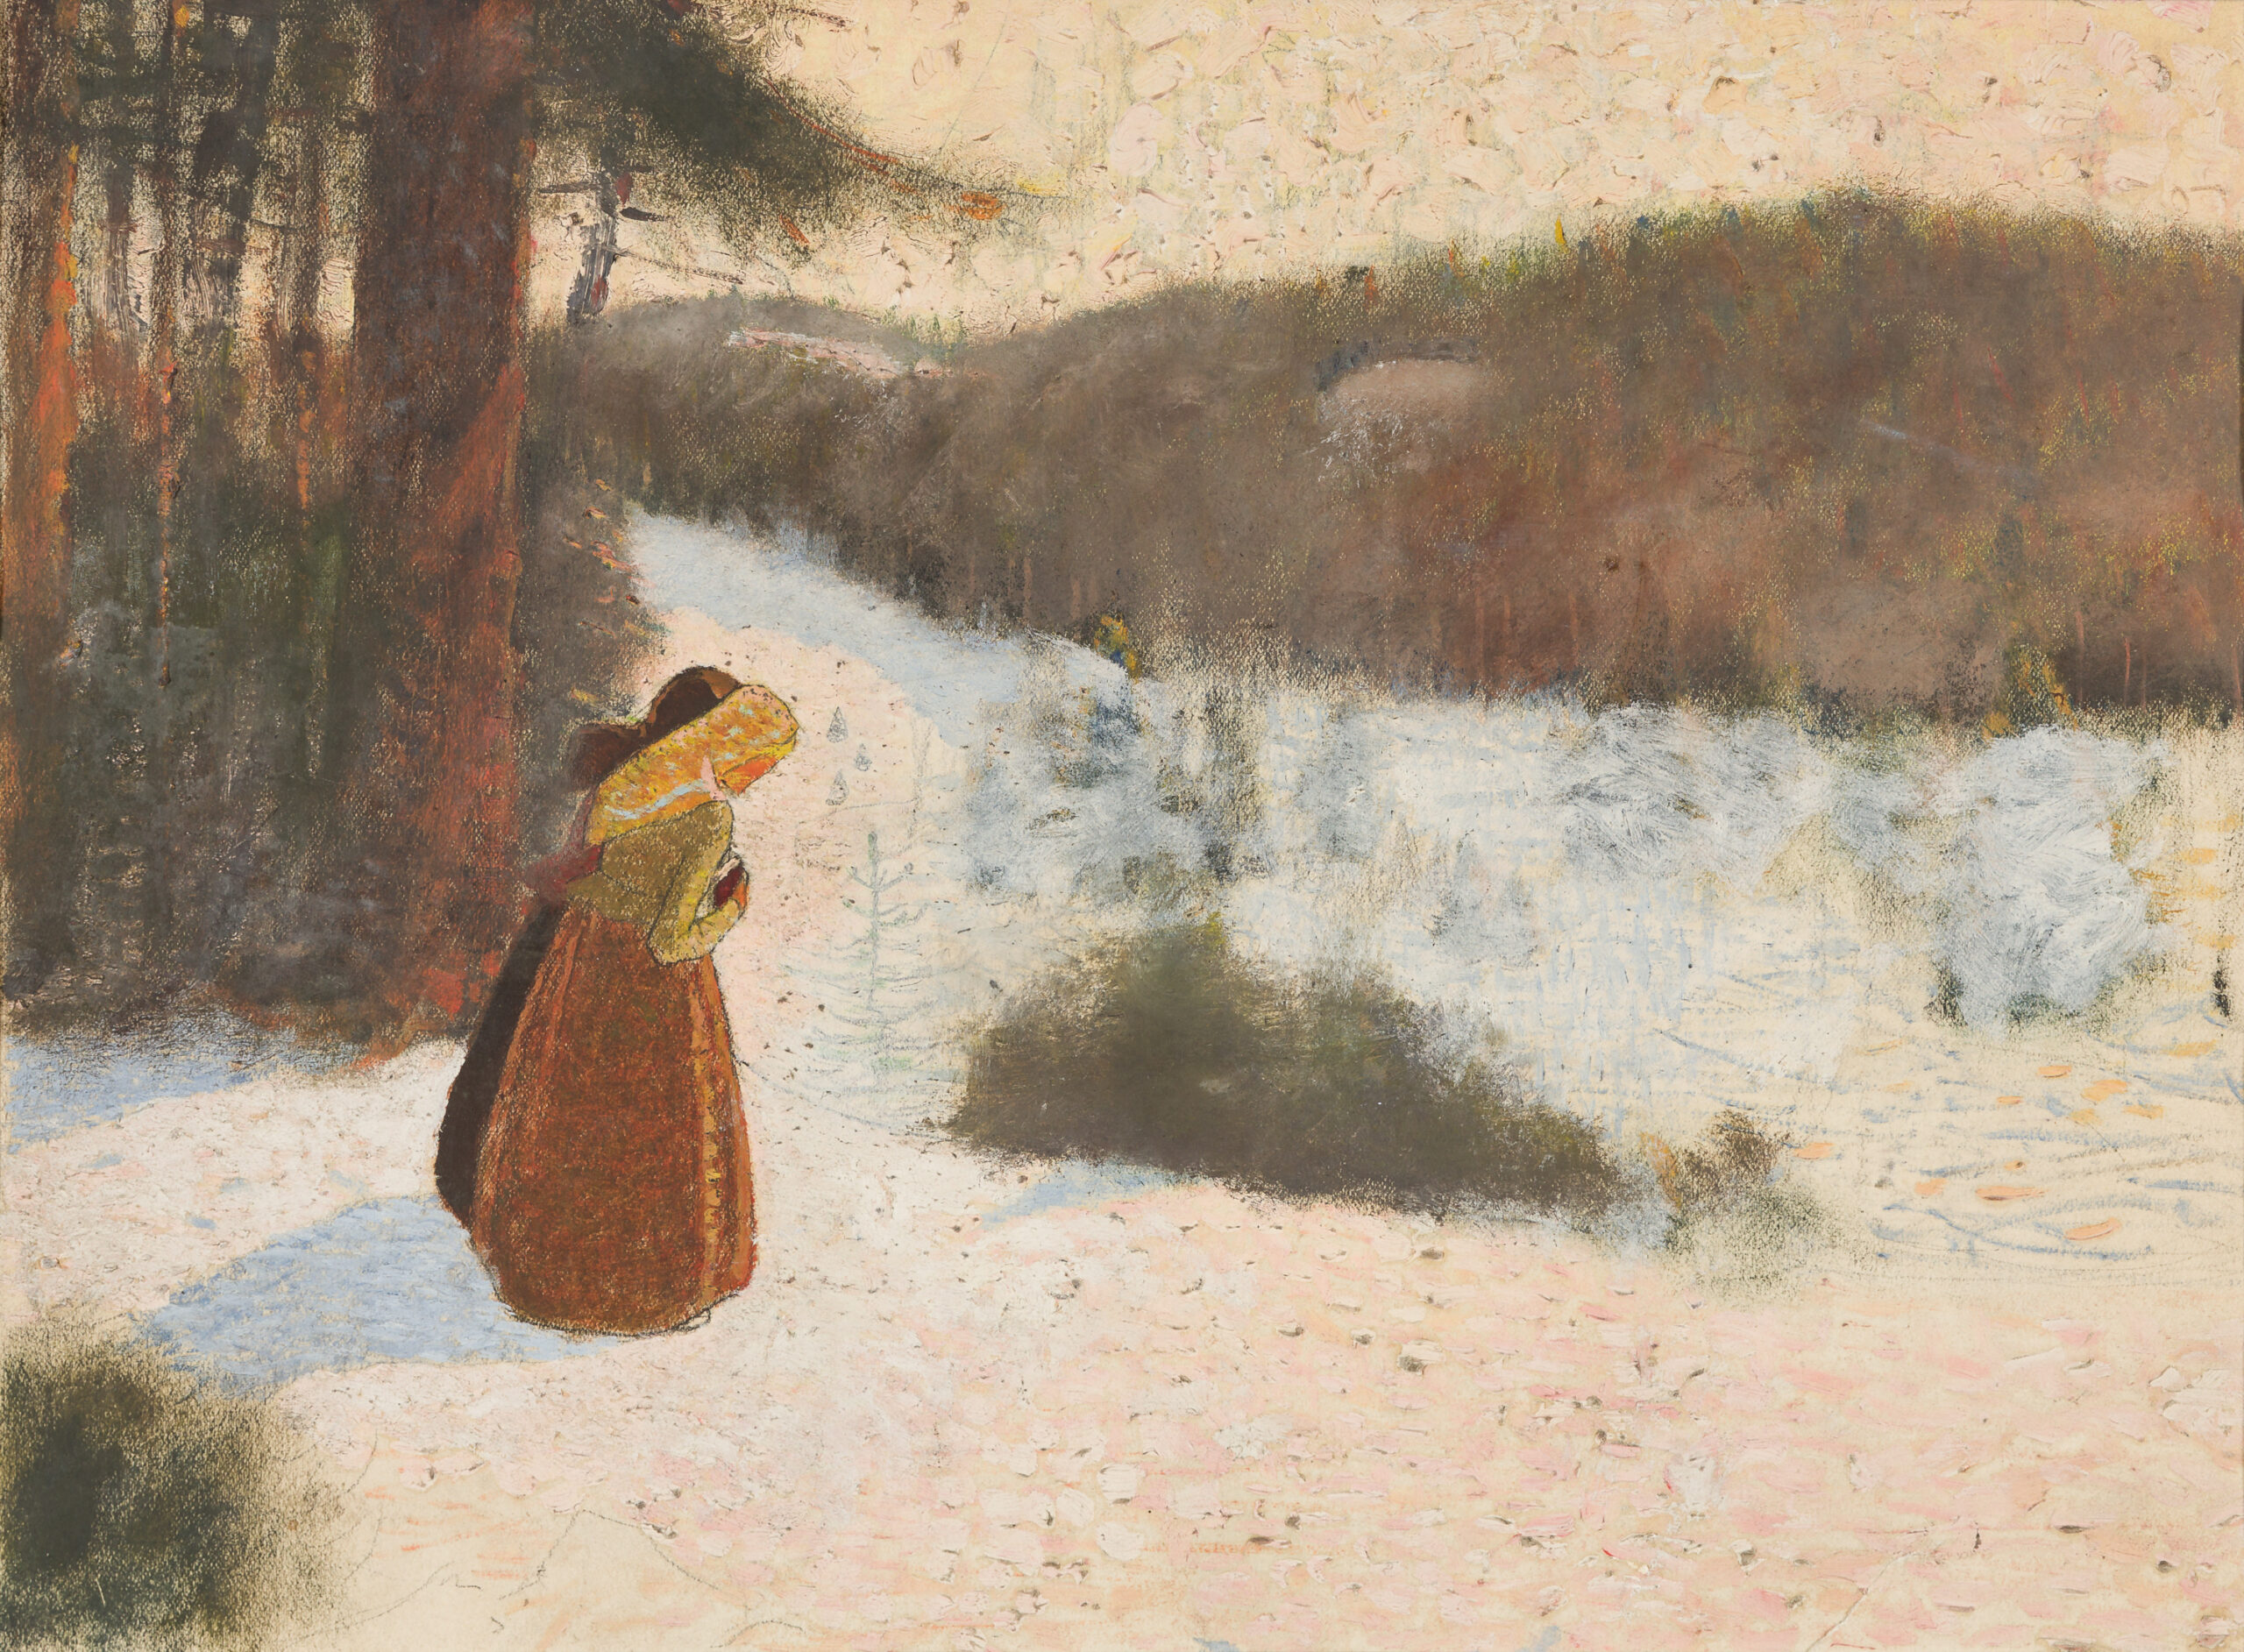 Krause Heinrich-Two women in a winter landscape